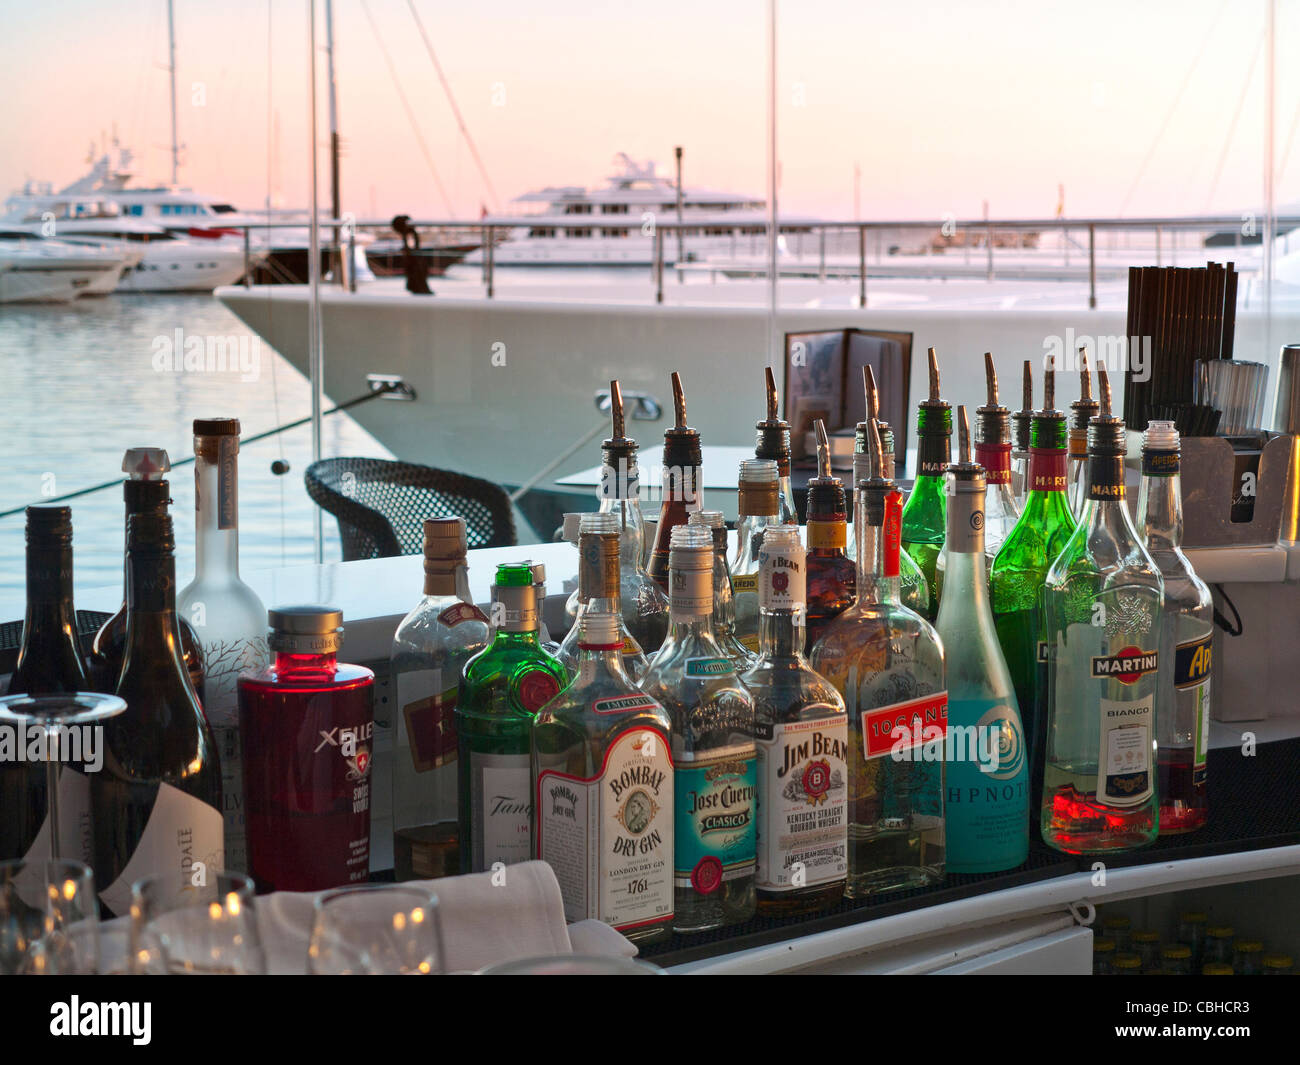 Variété de boissons exotiques dans des bouteilles esprit bar restaurant au bord de l'eau chic marina resort de luxe Puerto Portals Majorque Espagne Banque D'Images